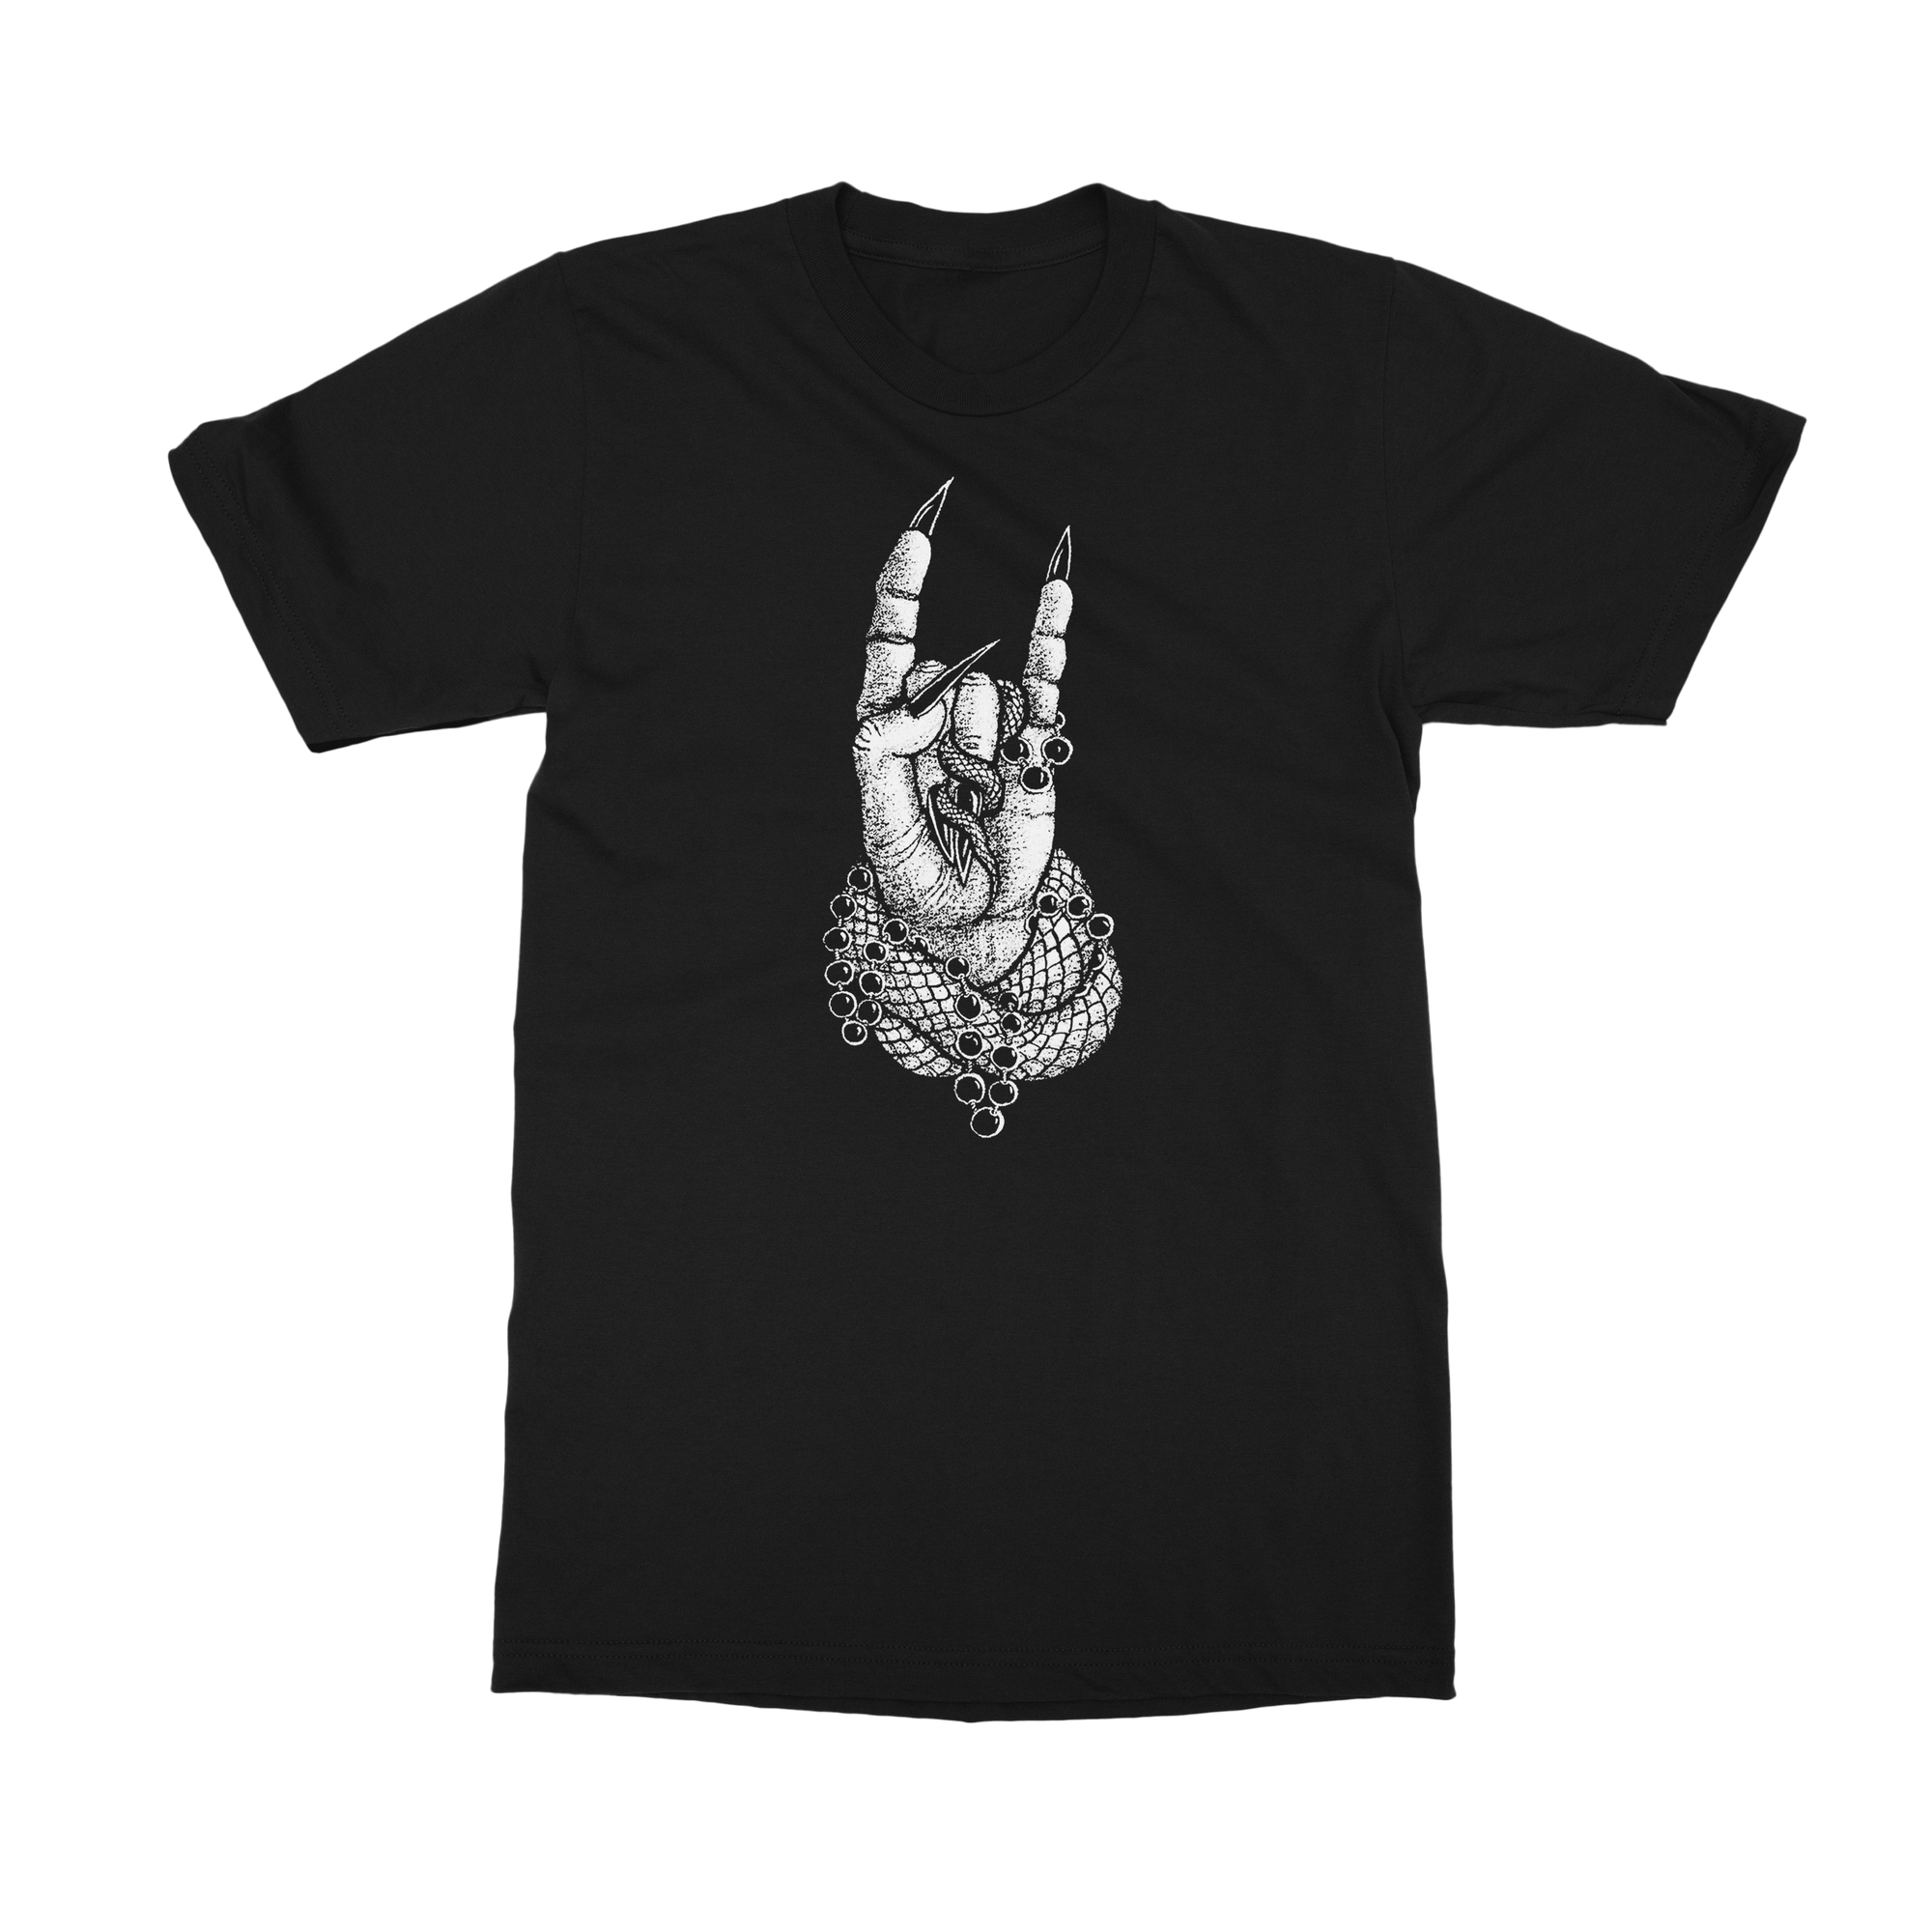 SALE - Horns Up T-Shirt by Dylan Garrett Smith